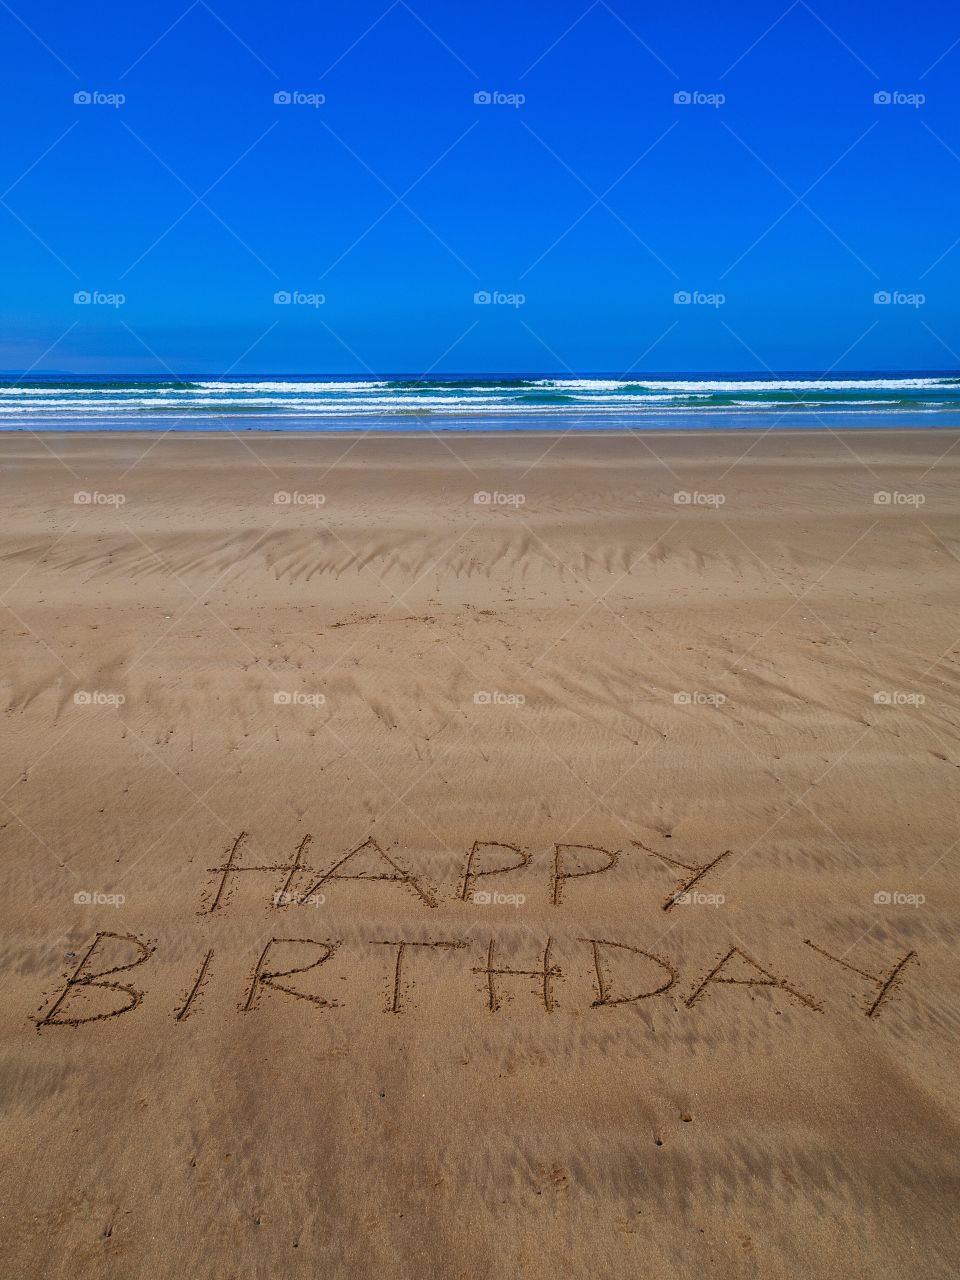 Happy birthday beach writing 